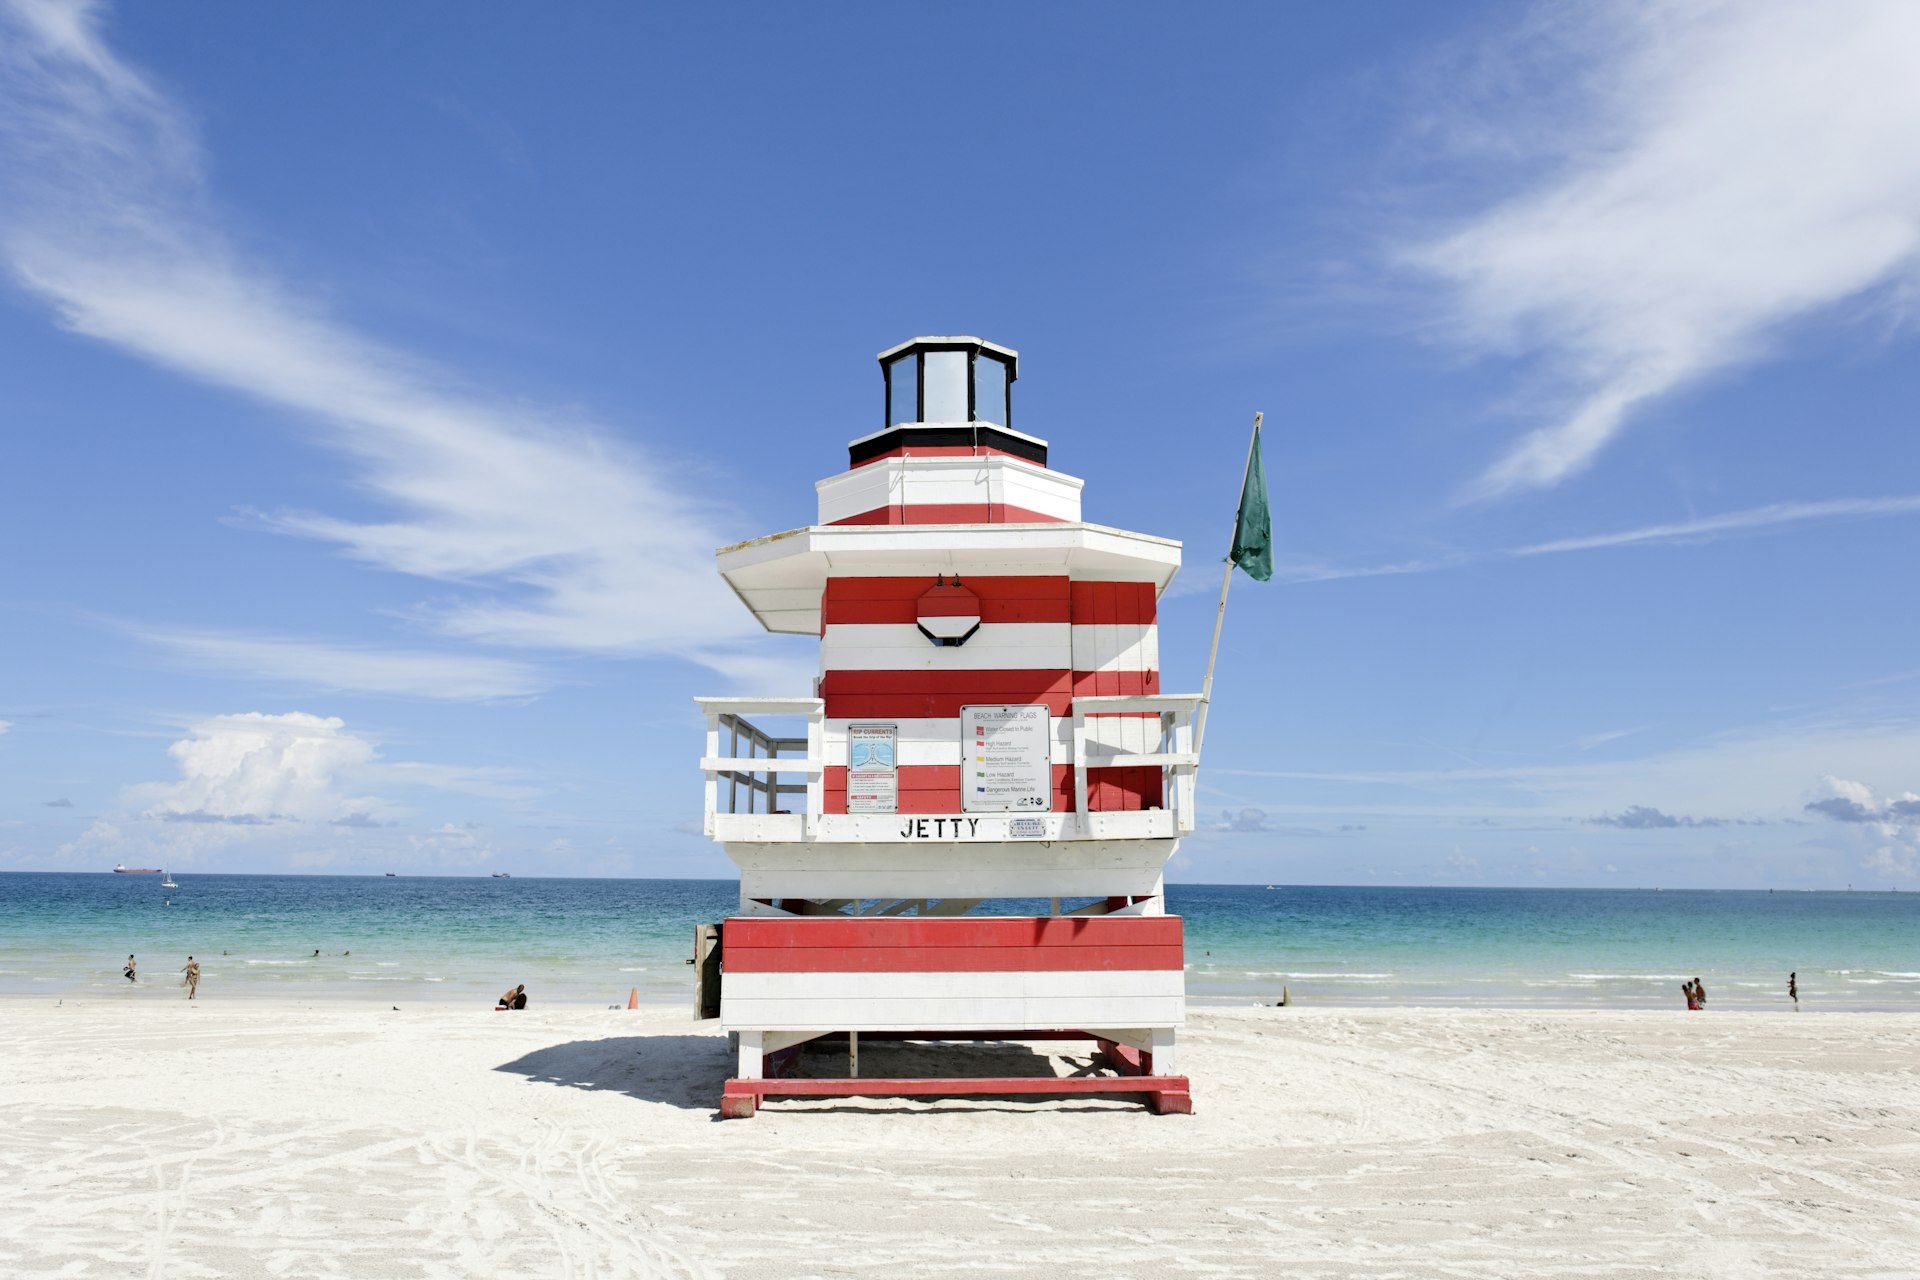 Uma grande torre de salva-vidas com listras vermelhas e brancas situada em uma praia de areia branca e contra um céu azul com nuvens finas